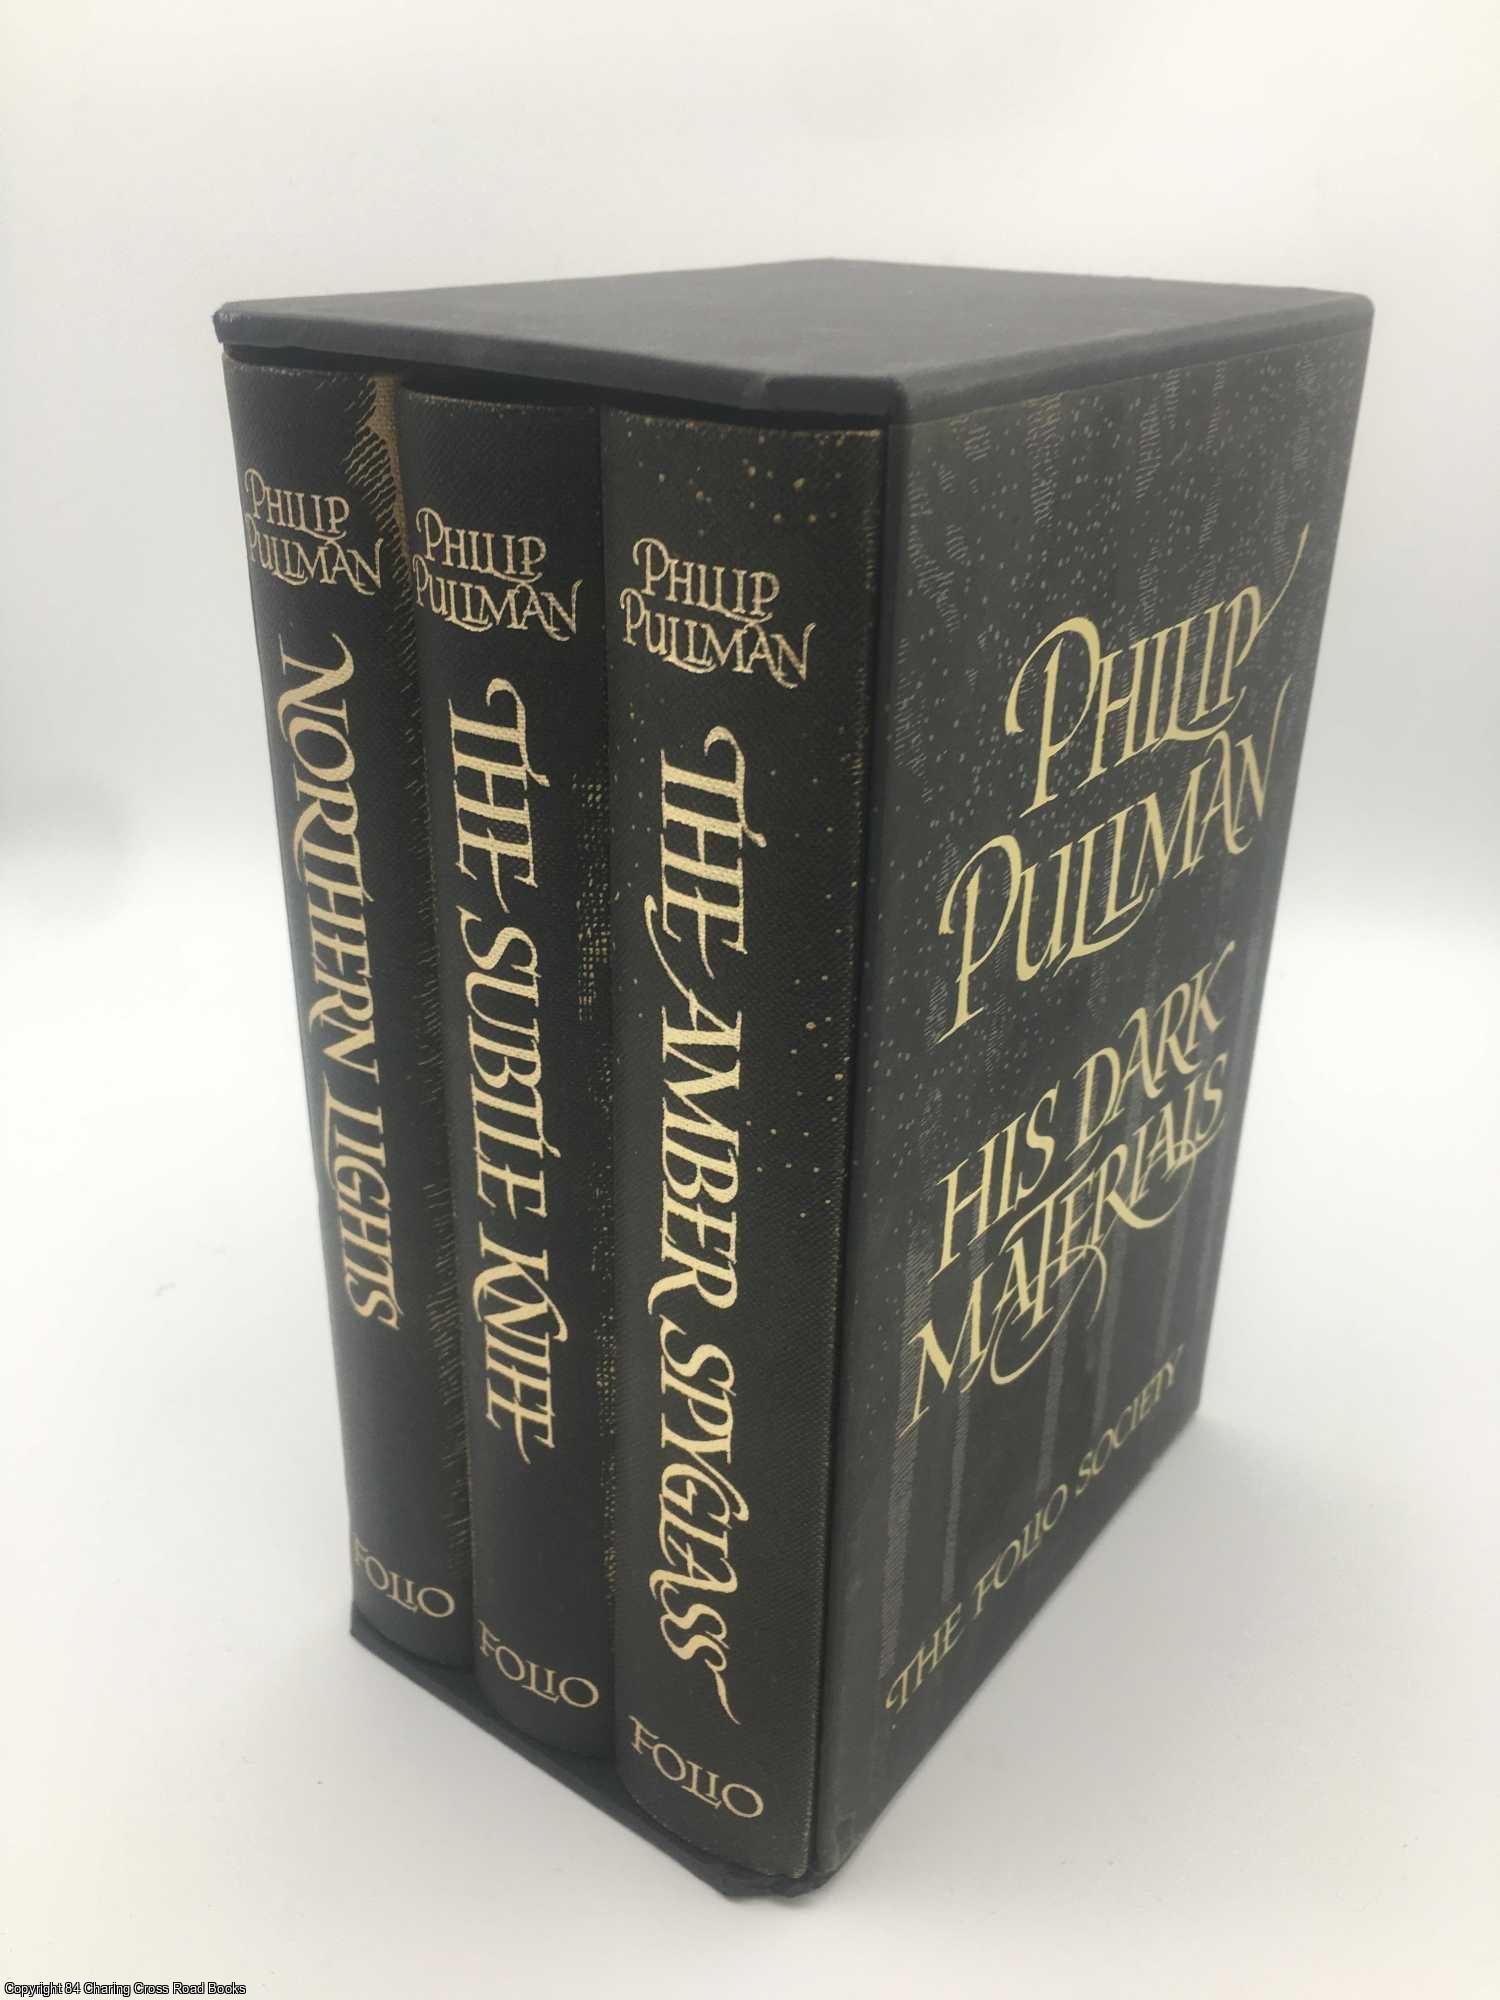 Pullman, Philip - His Dark Materials